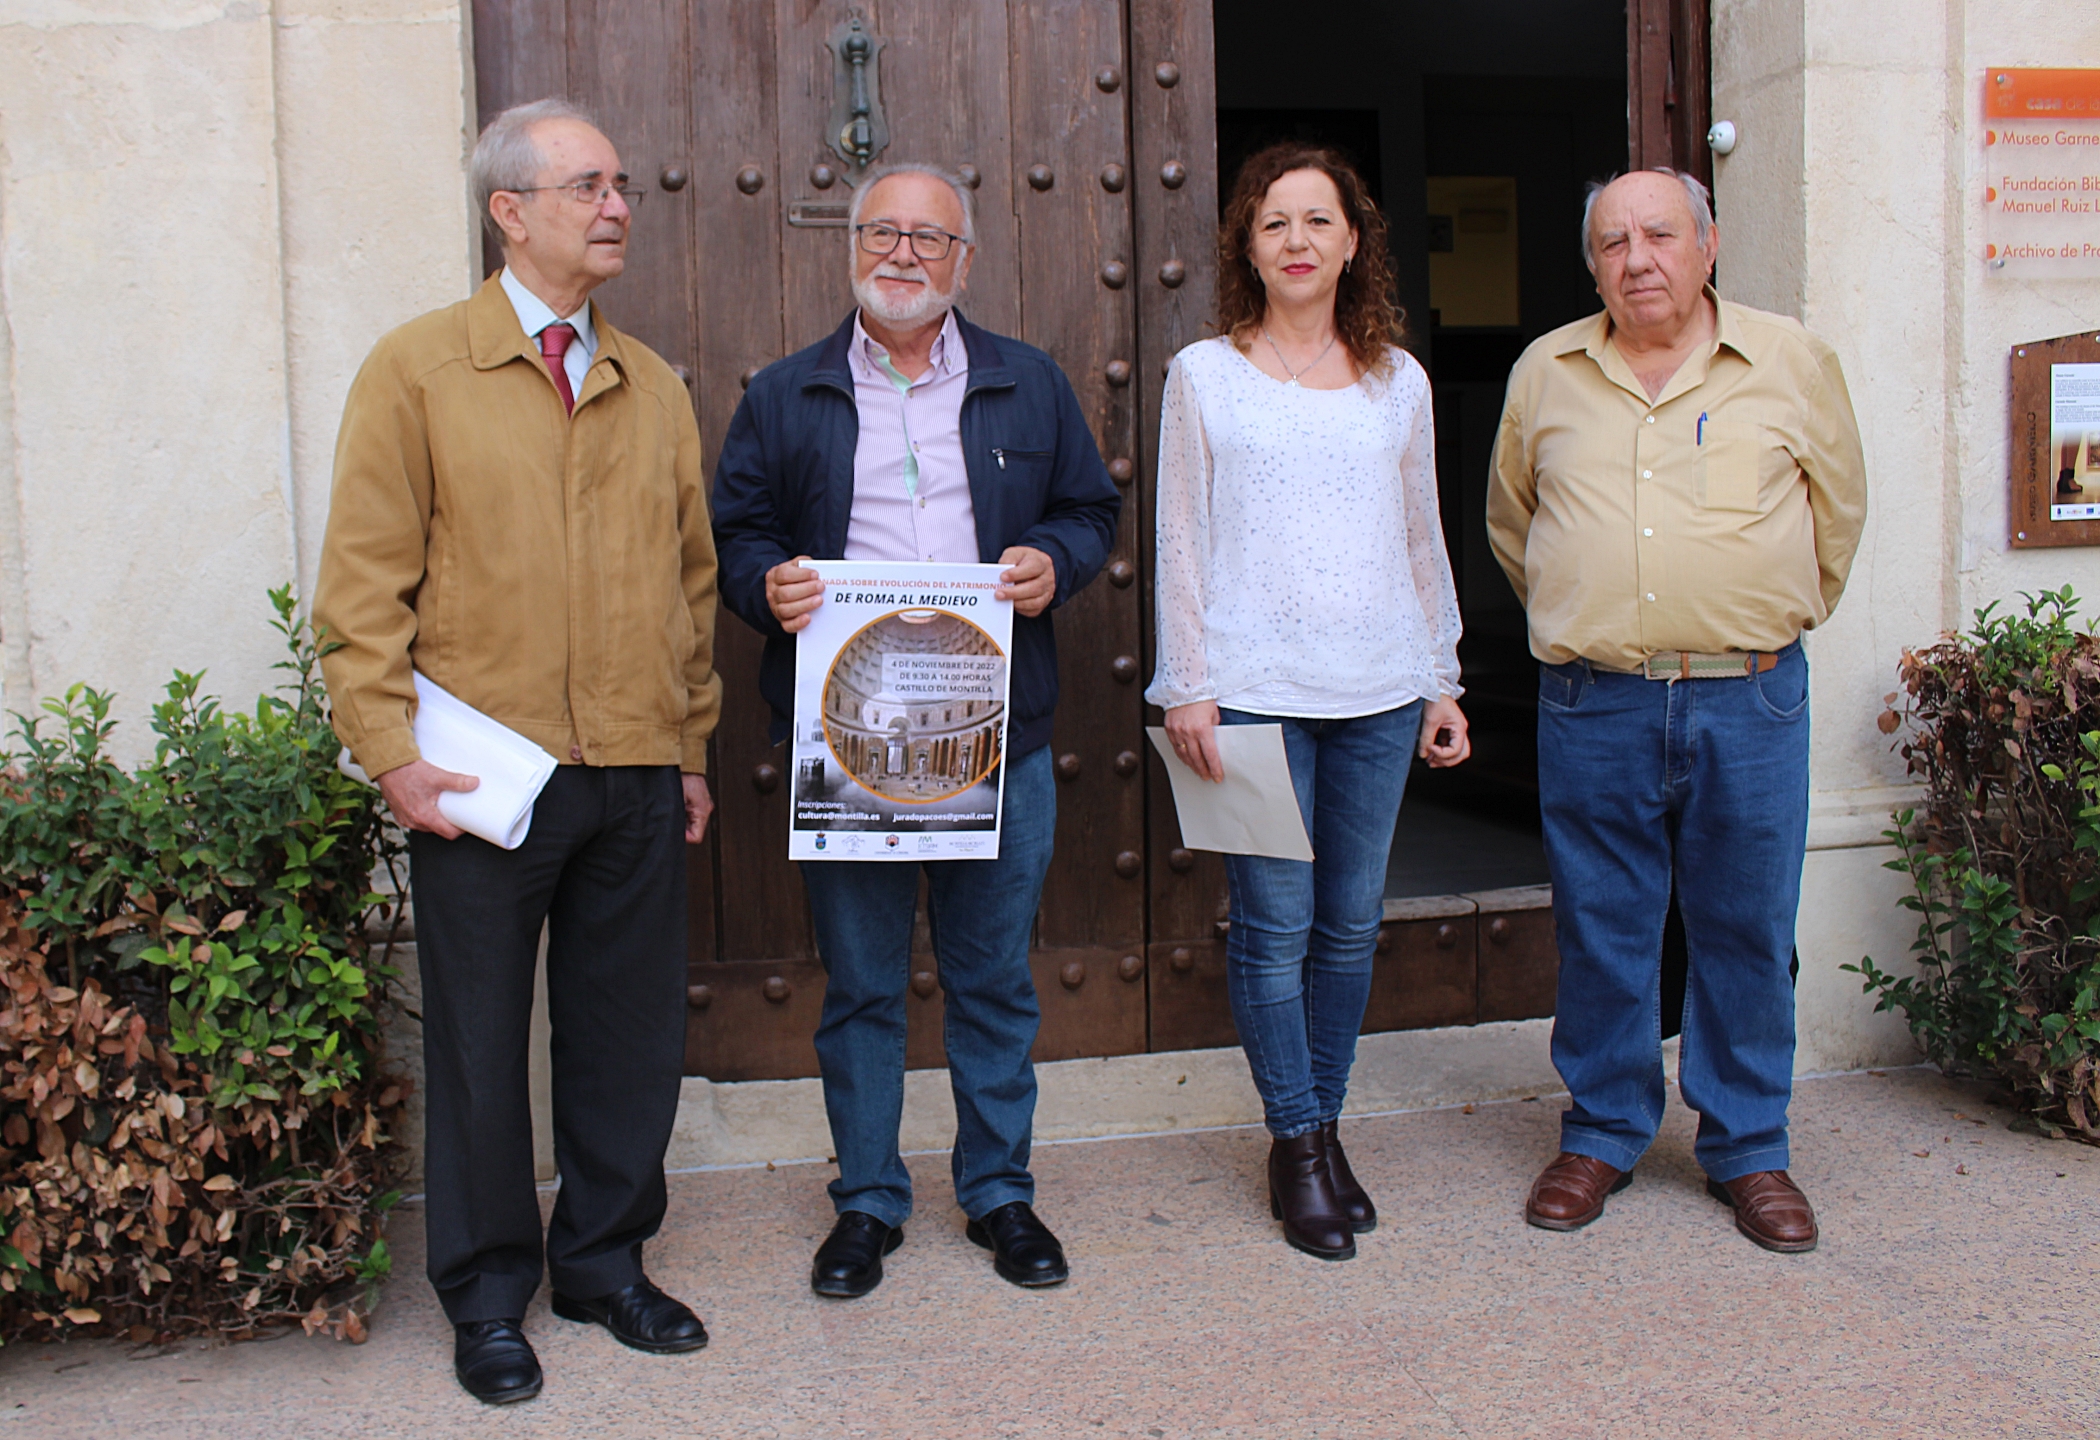 La delegada de Cultura presenta las X Jornadas de Historia de Montilla